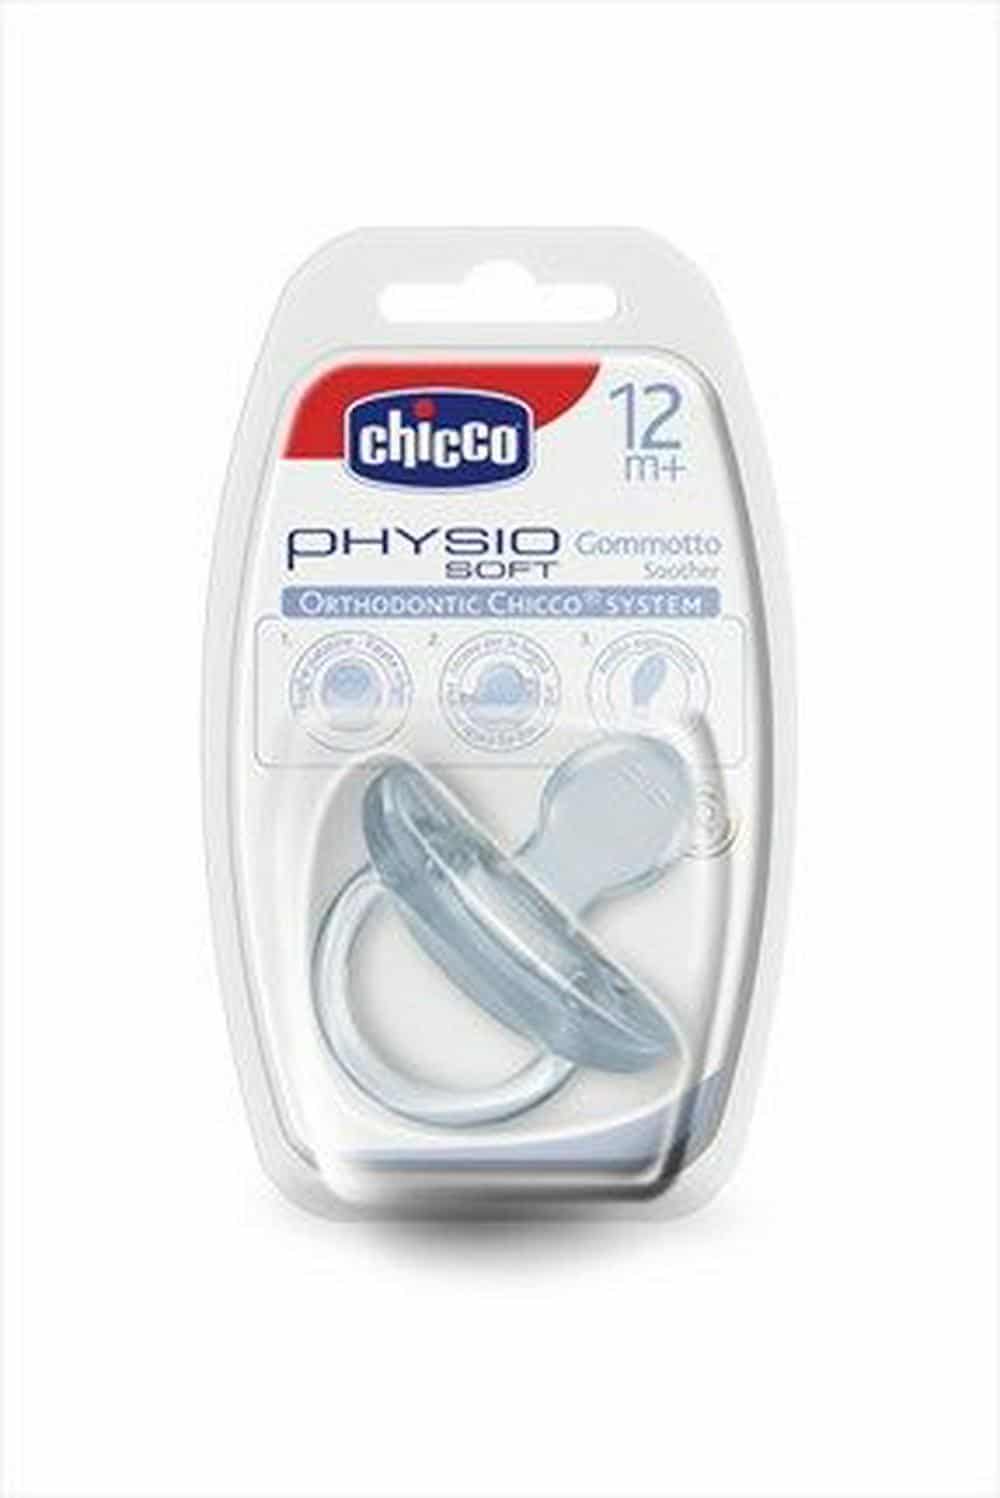 Ciuccio Gommotto Physio Soft
Silicone 12+m